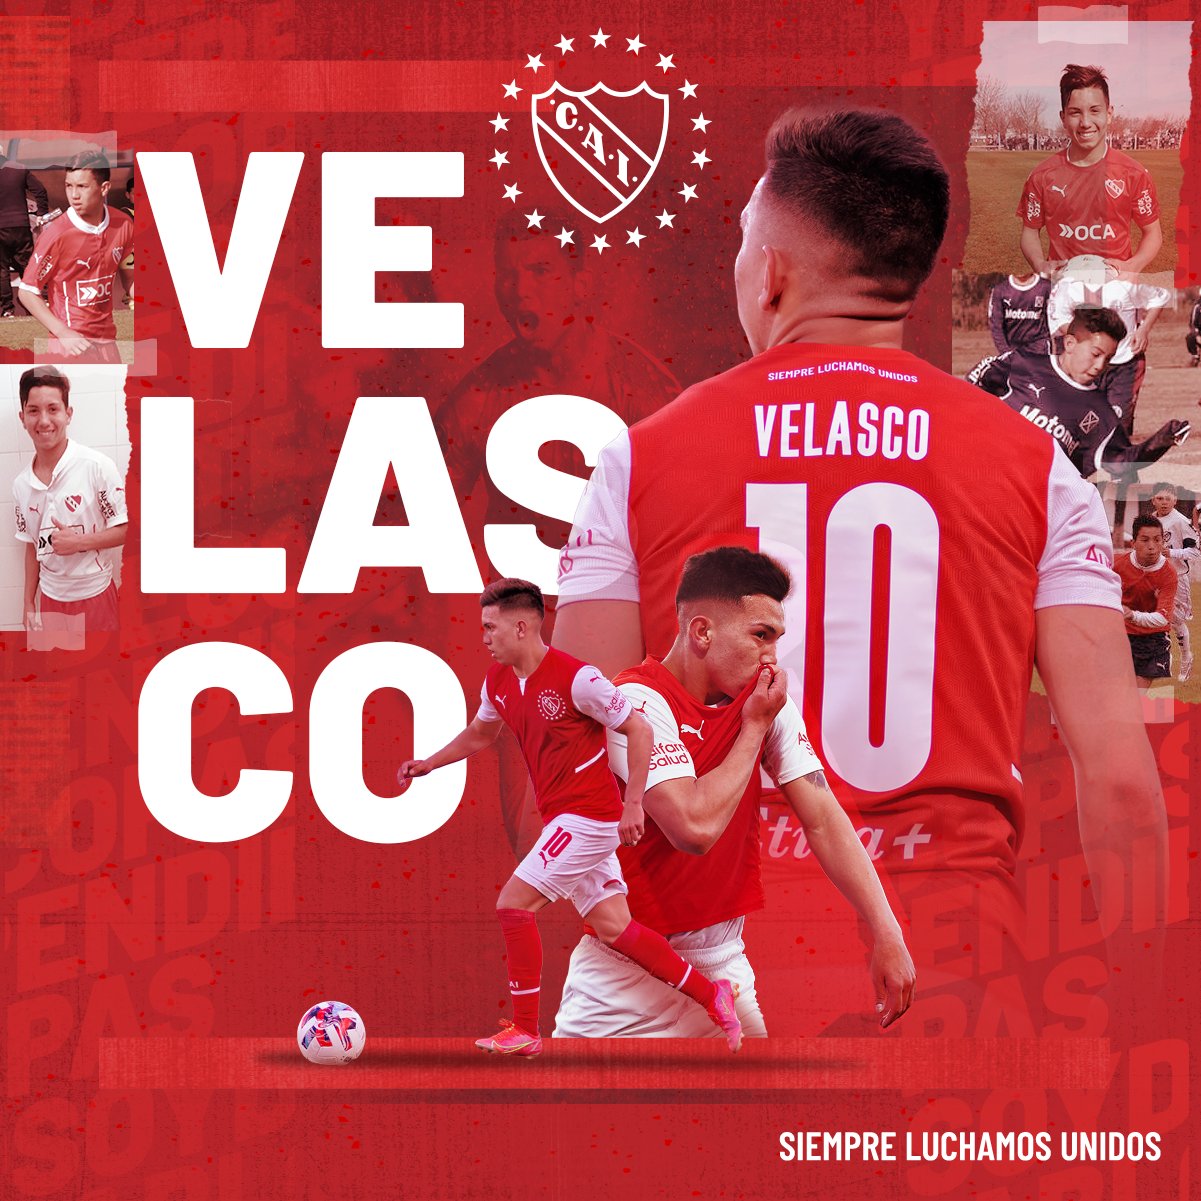 Con esta imagen, Independiente despidió a Alan Velasco en todas sus redes sociales.